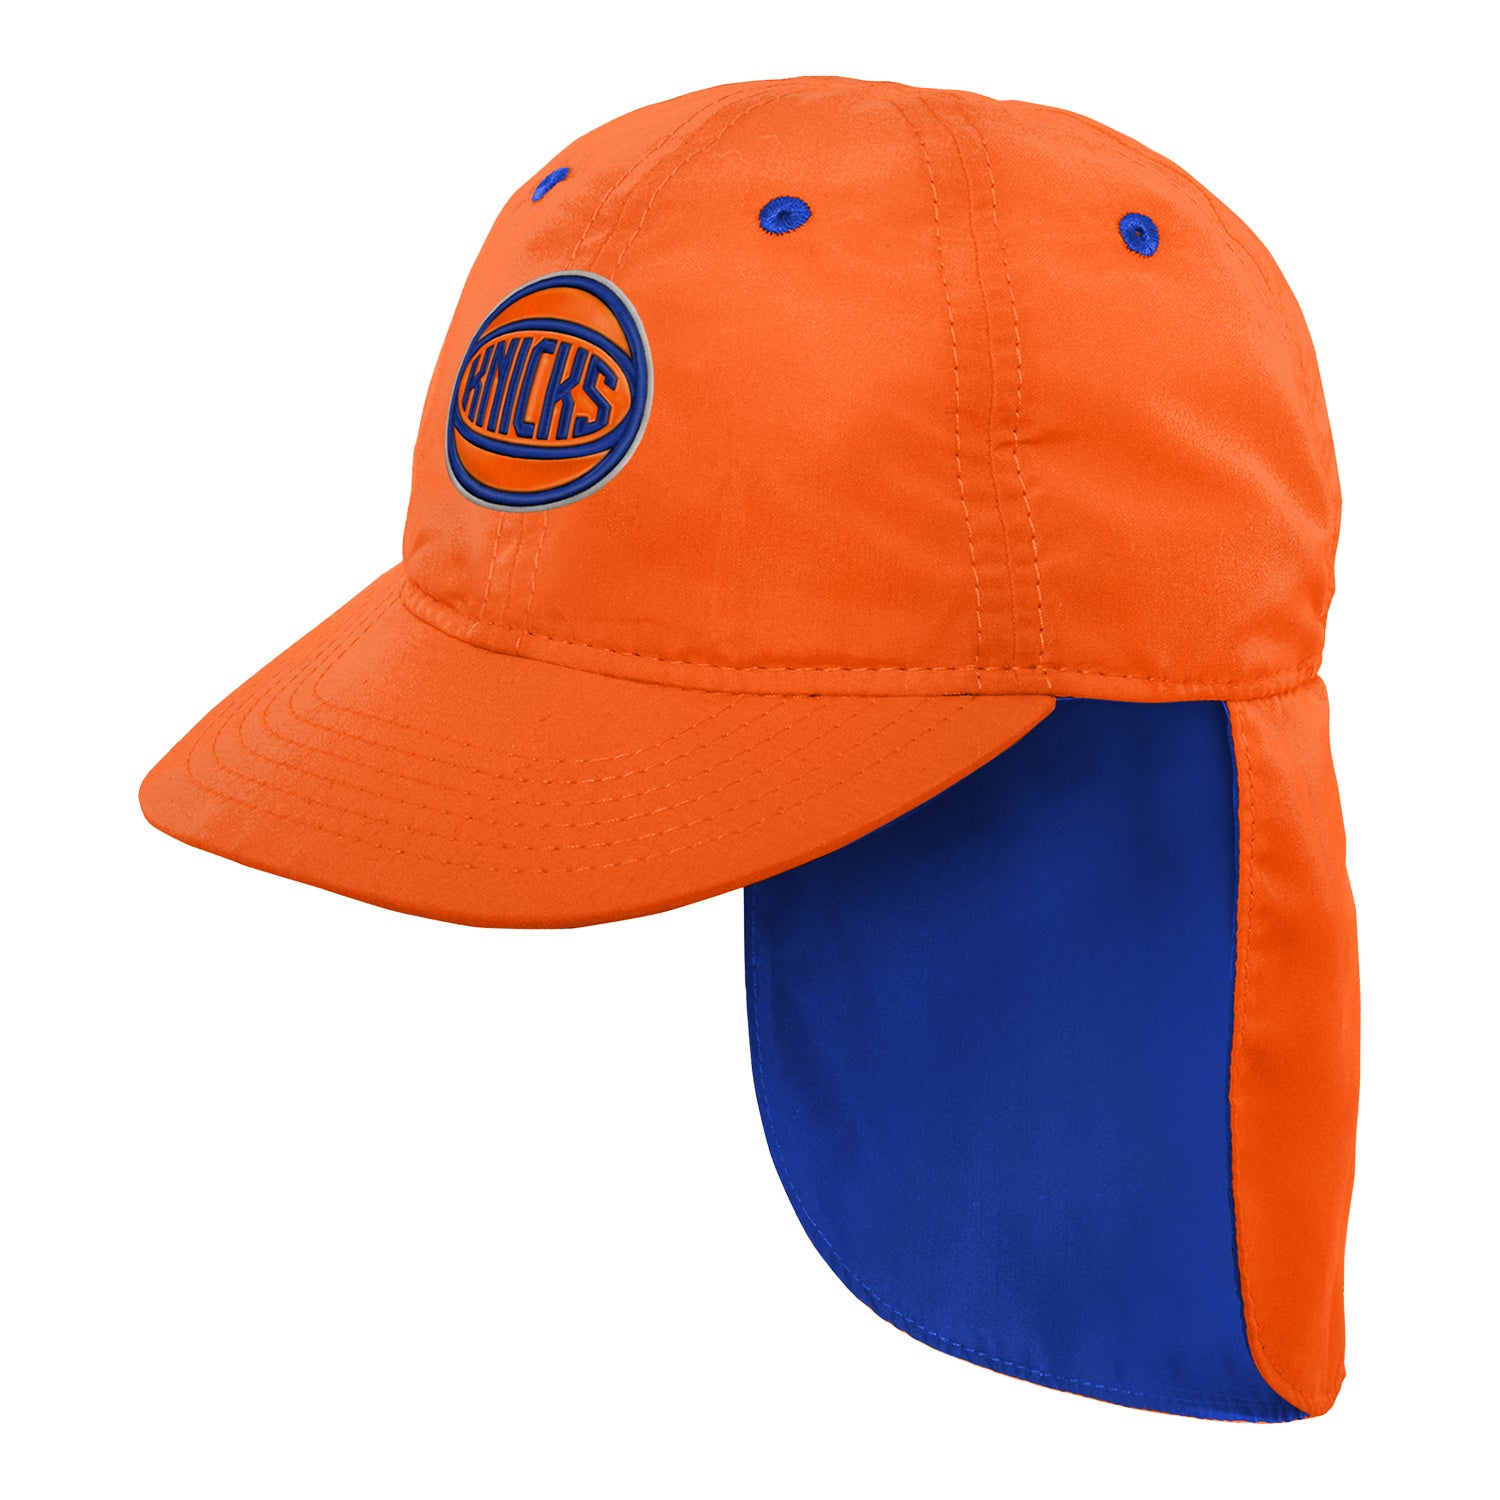 Boys Knicks Sun Hat - In Orange - Left View